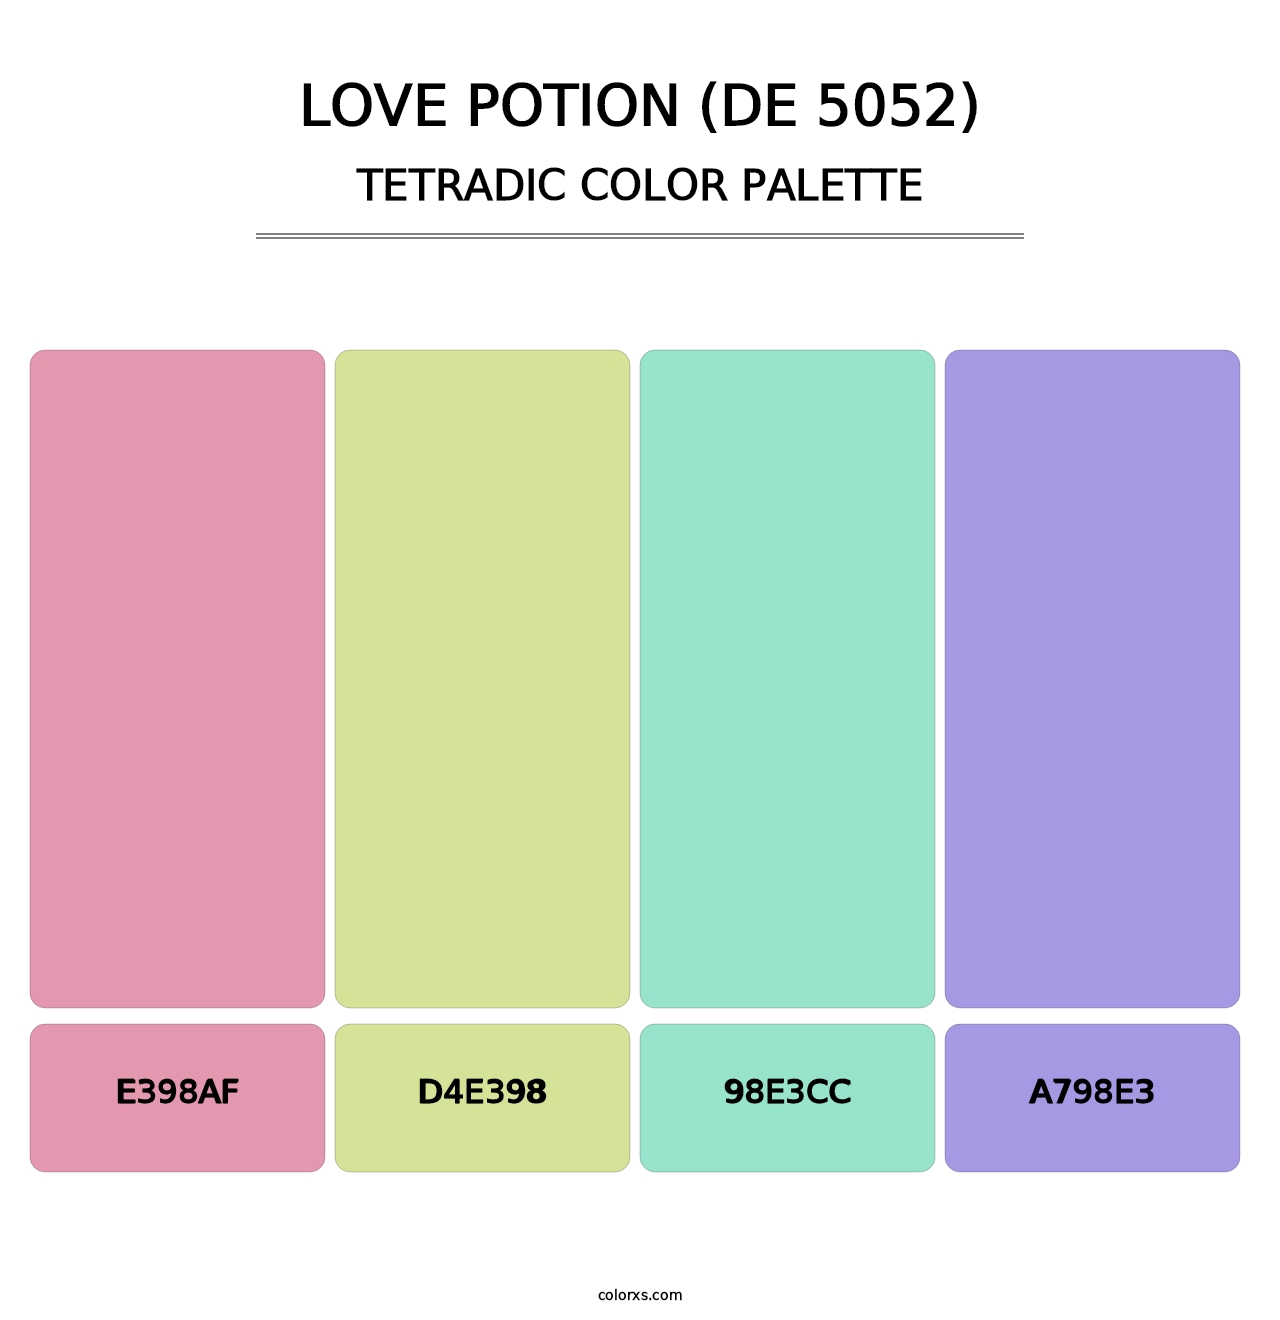 Love Potion (DE 5052) - Tetradic Color Palette